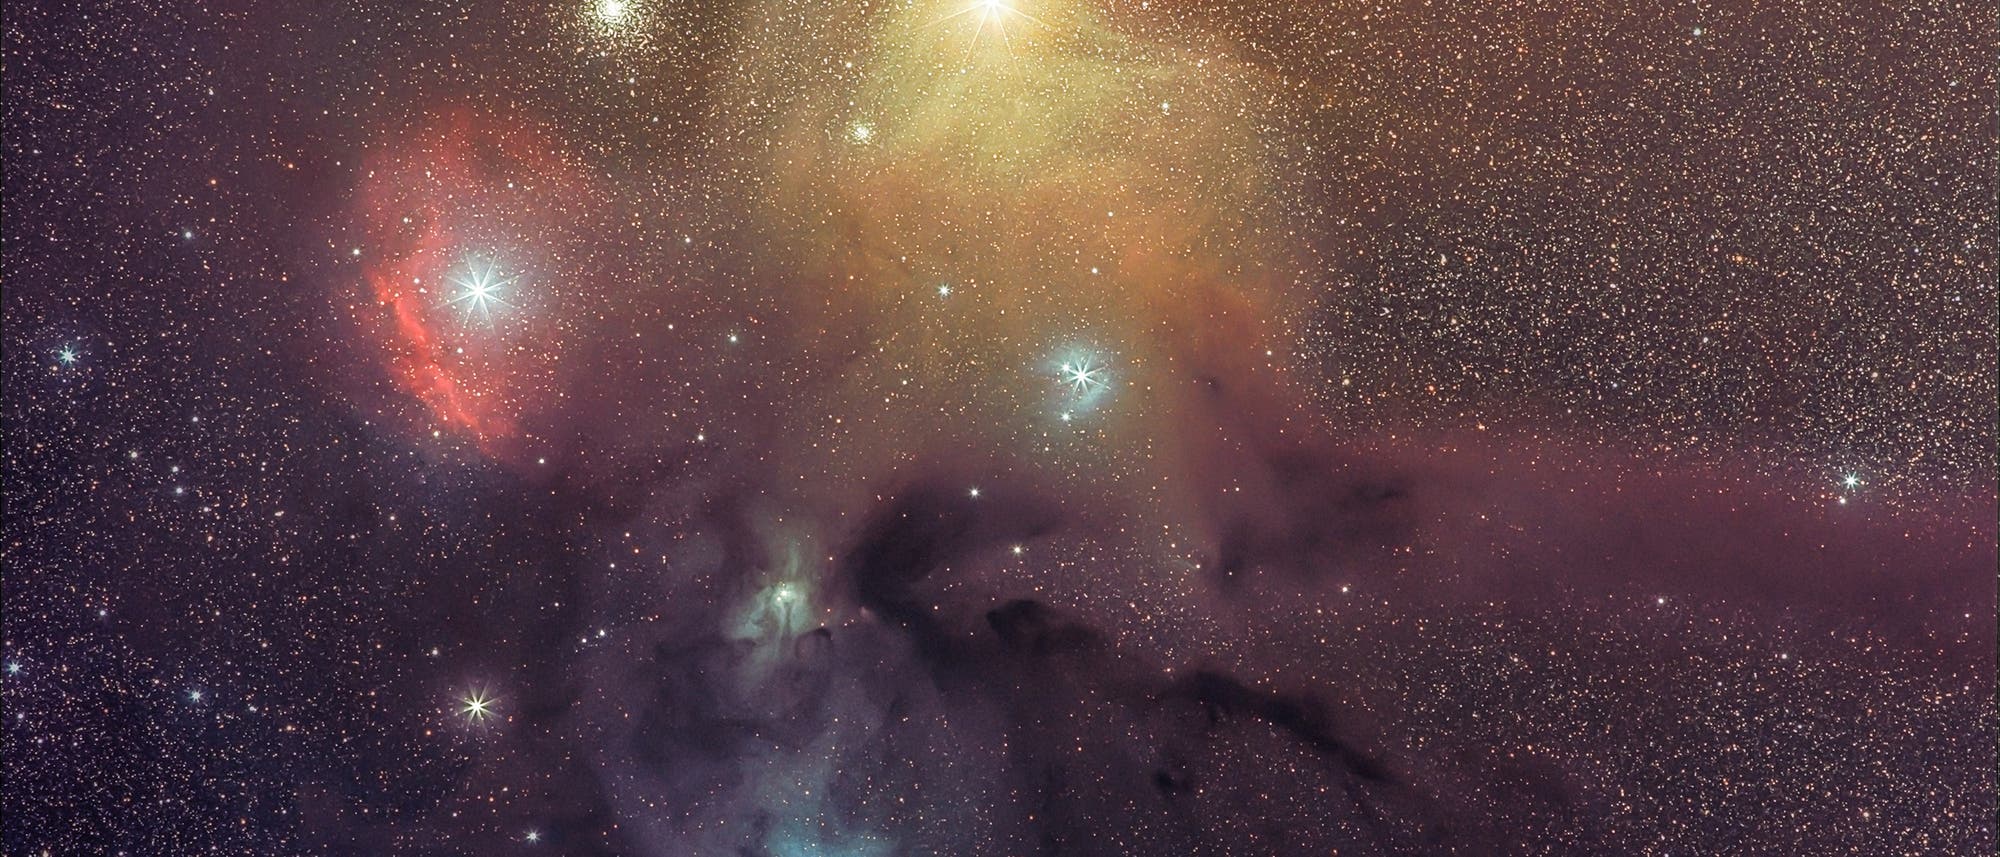 Farbenspiel,  Nebelkomplex, Stern  Antares